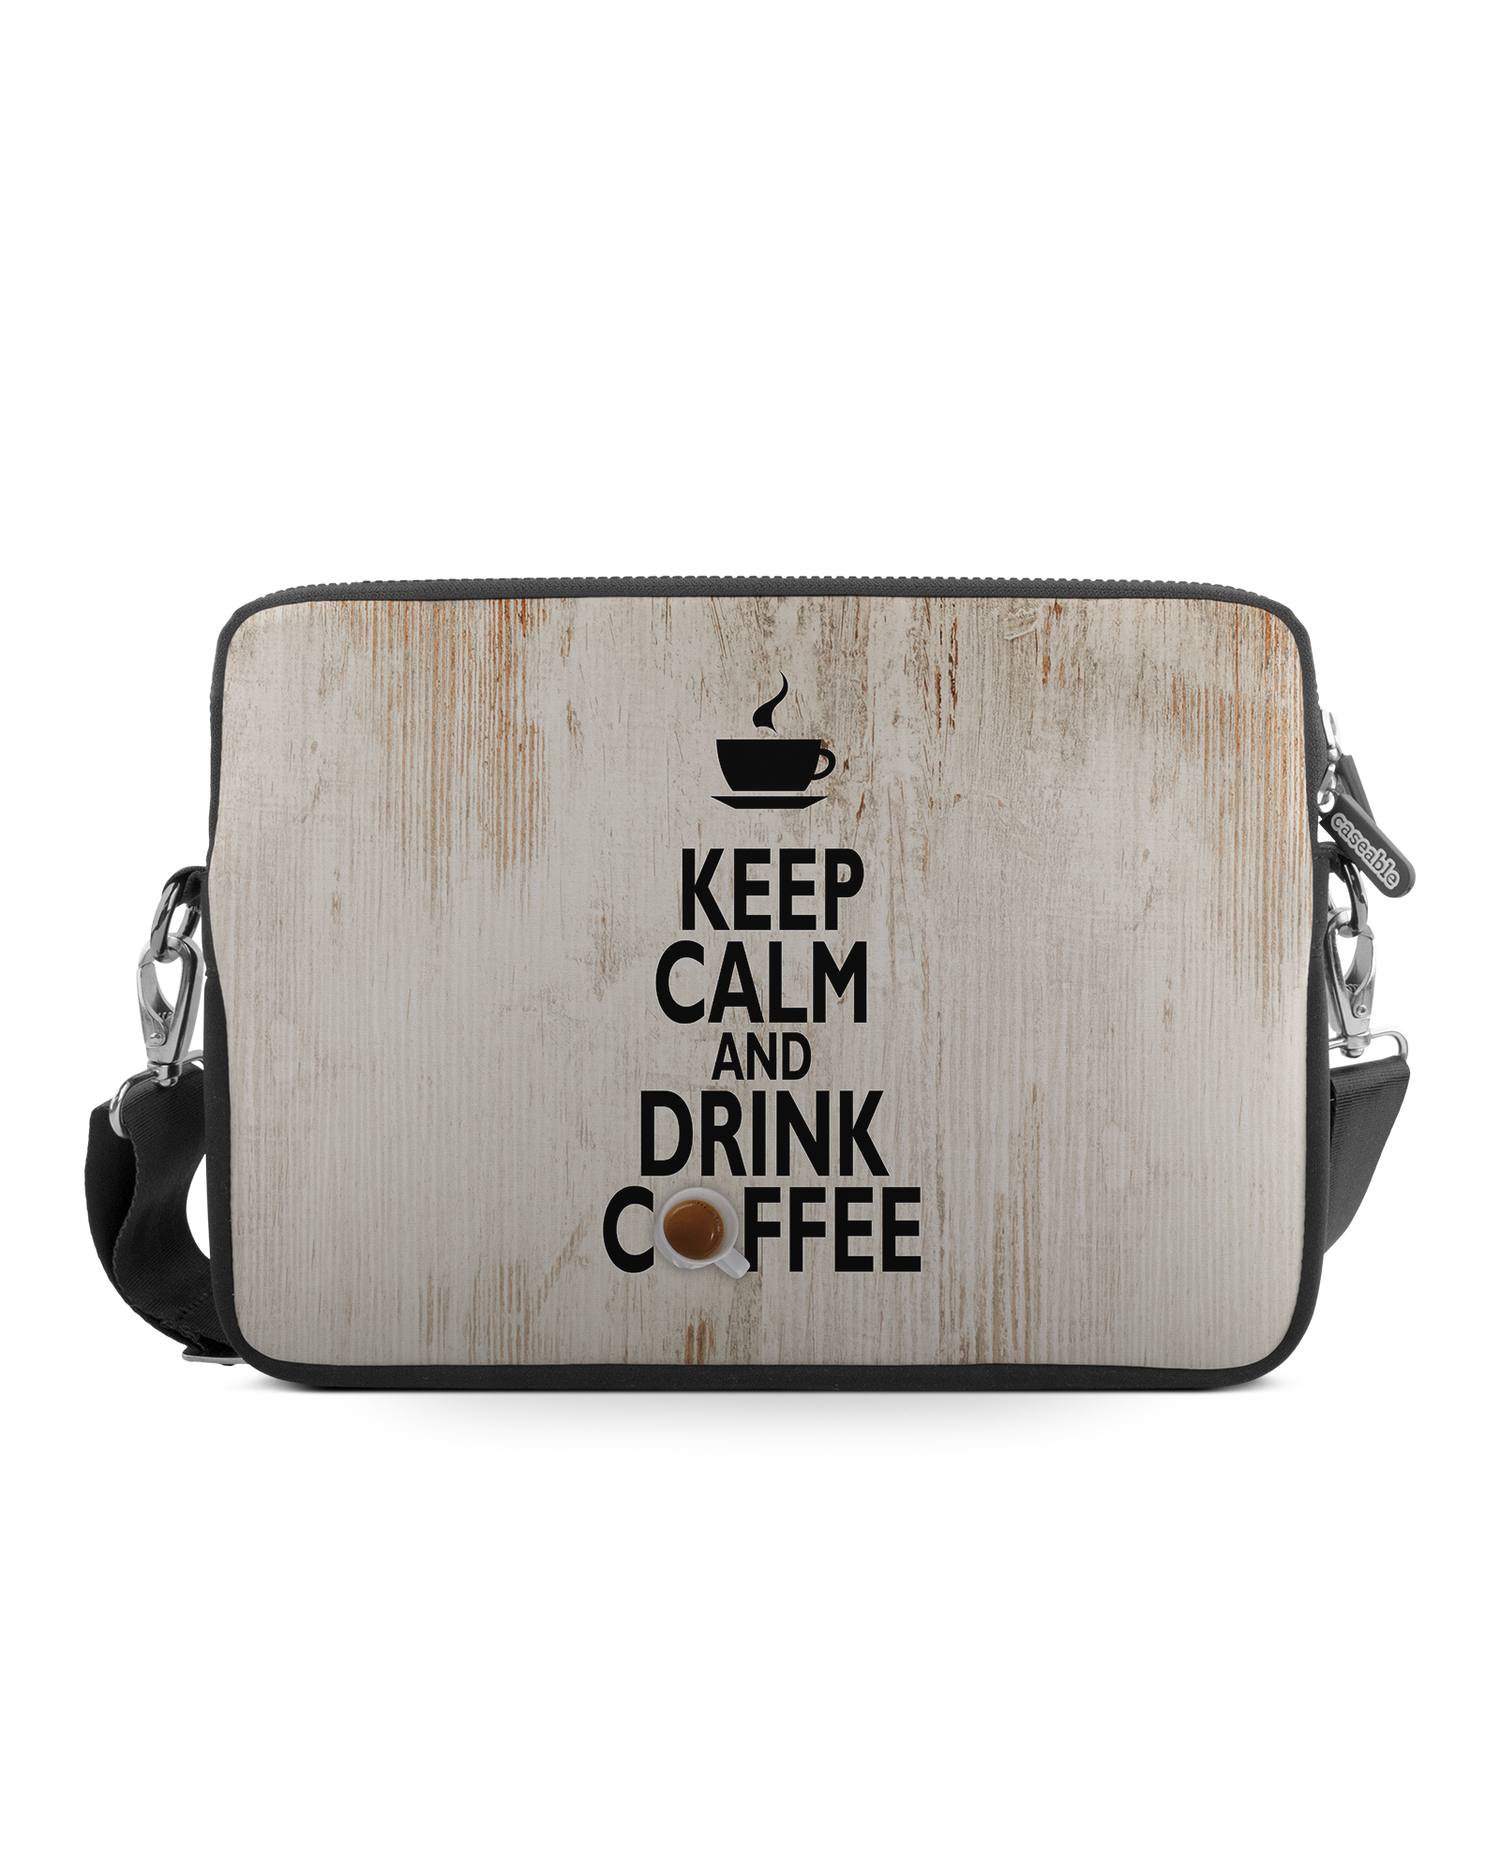 Drink Coffee Premium Laptoptasche 13 Zoll: Vorderansicht